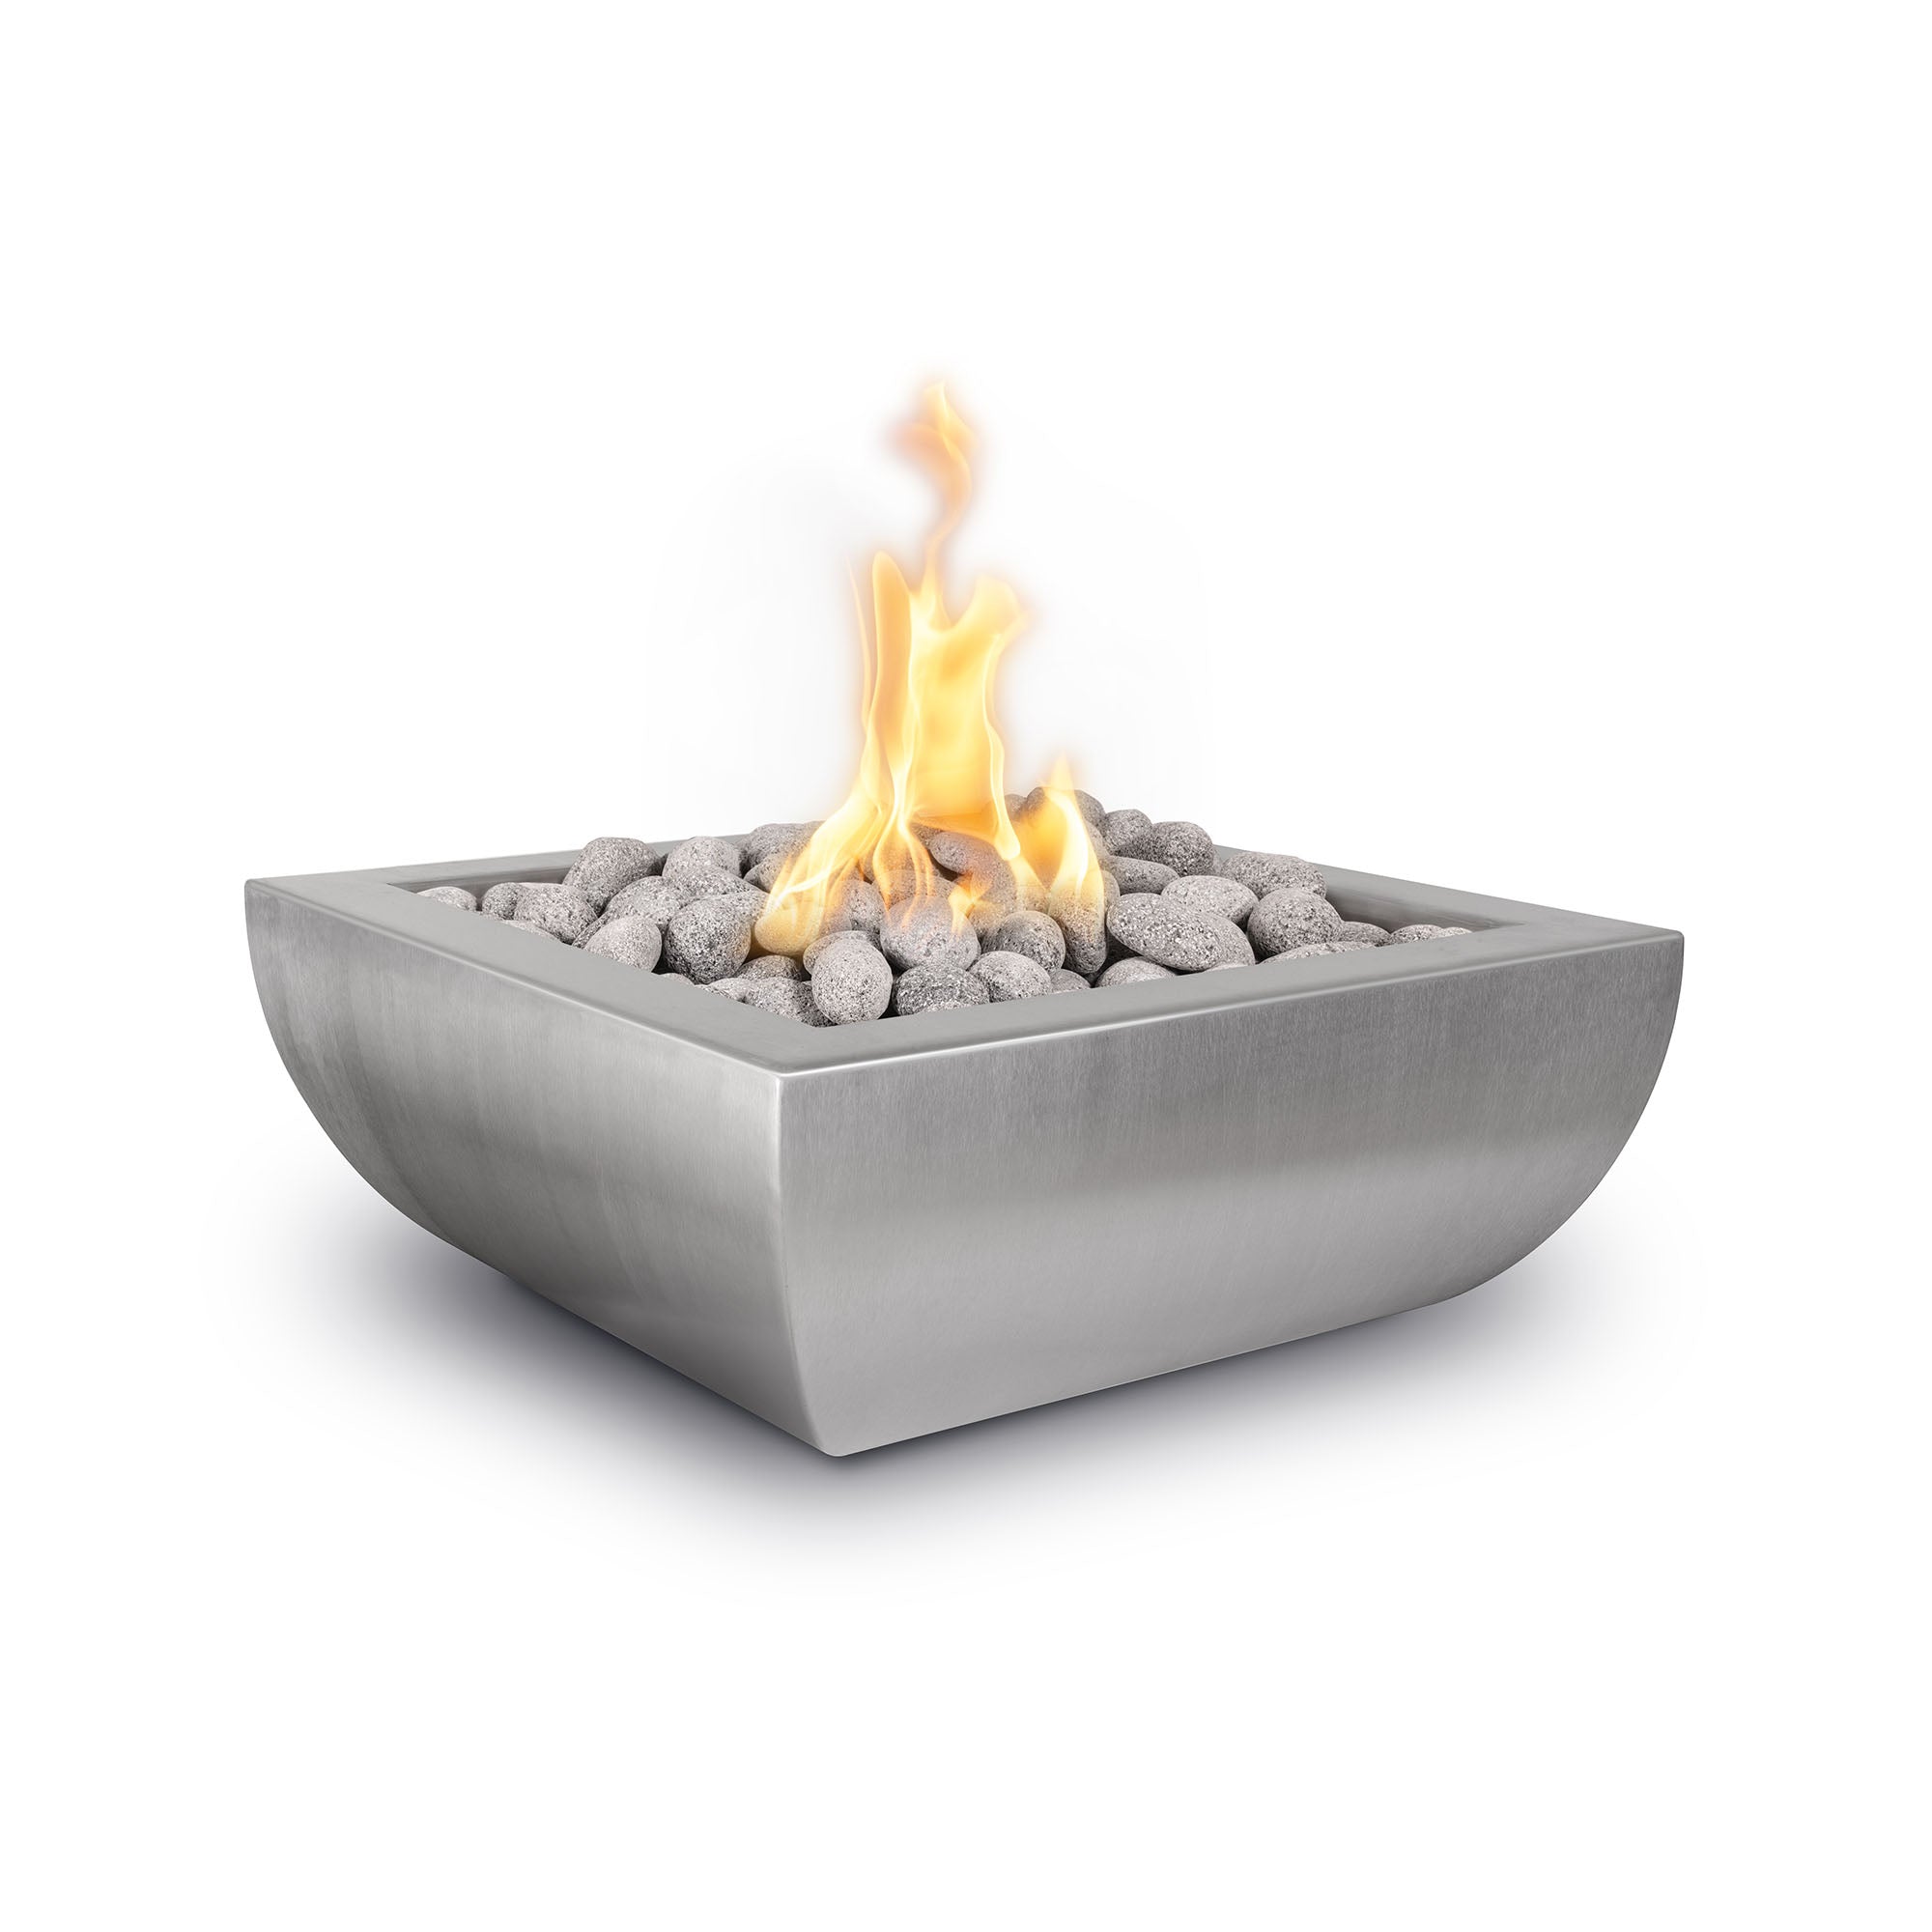 The Outdoor Plus Avalon Concrete Fire Bowl